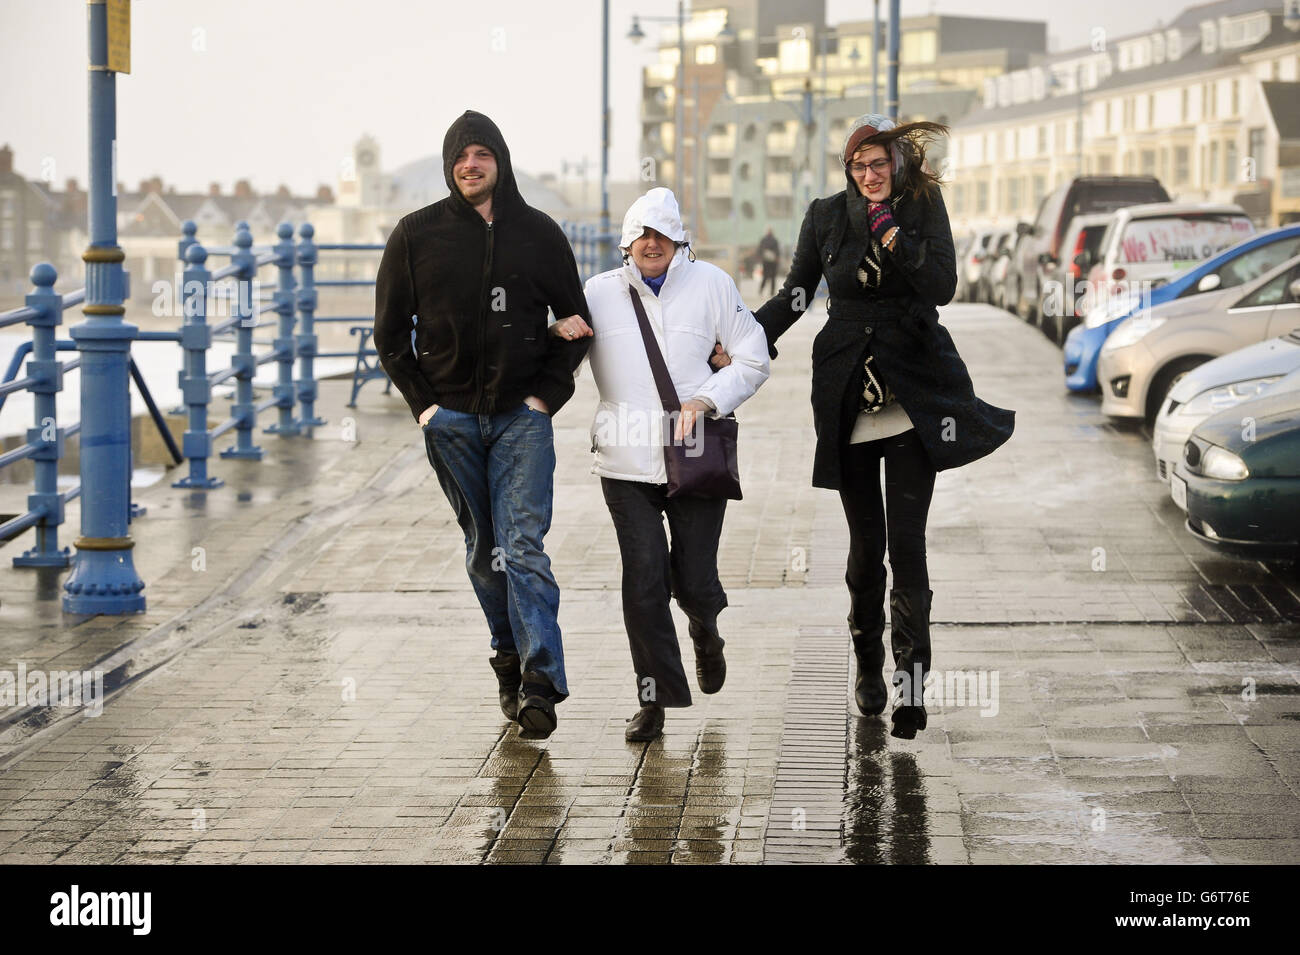 Die Menschen kämpfen, um ihren Weg entlang der Esplanade, Porthcawl, Südwales zu machen, da die Region weiterhin von starken Winden und starken Regenfällen geschlagen wird. Stockfoto